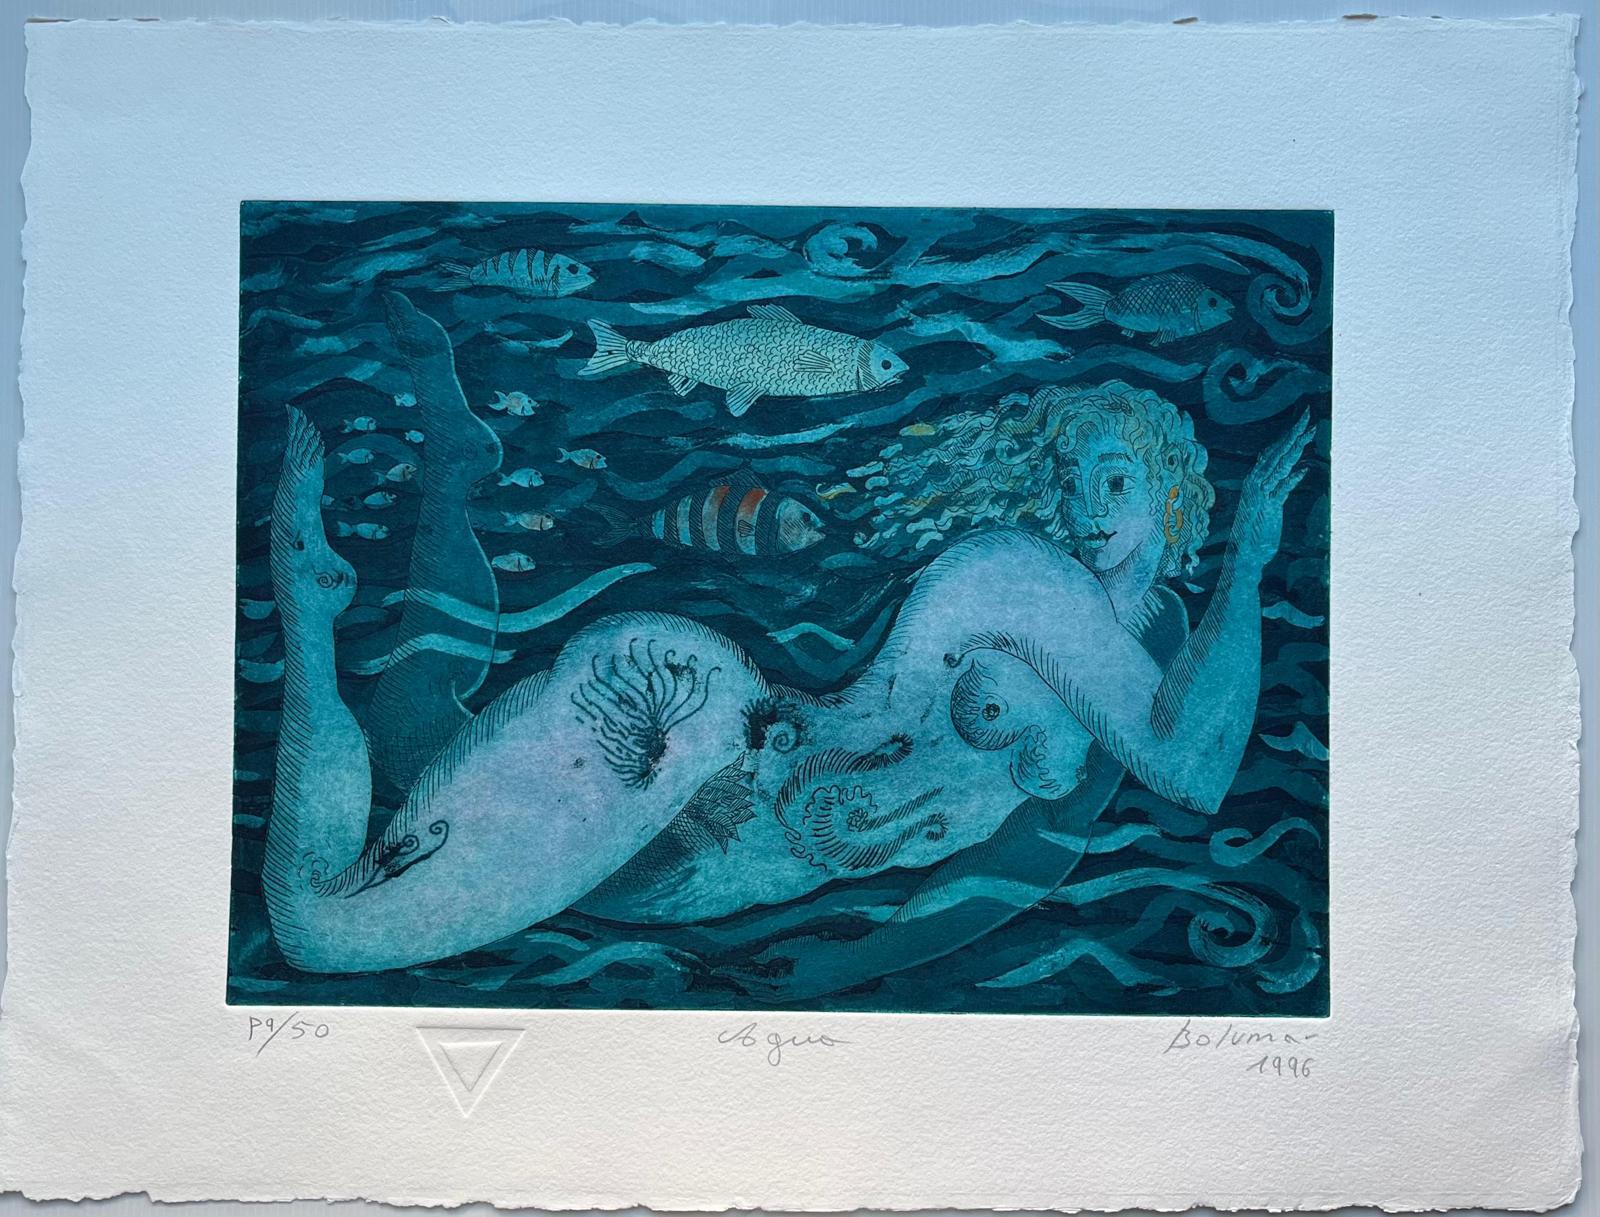 Magda Bolumar (Spain, 1936)
'Agua (Carpeta ""Los cuatro elementos"")', 1996
etching, aquatint on paper Rives BFK 300 g.
19.7 x 27.6 in. (50 x 70 cm.)
Edition of 50
Unframed
ID: BOL1268-003-050_2
Hand-signed by